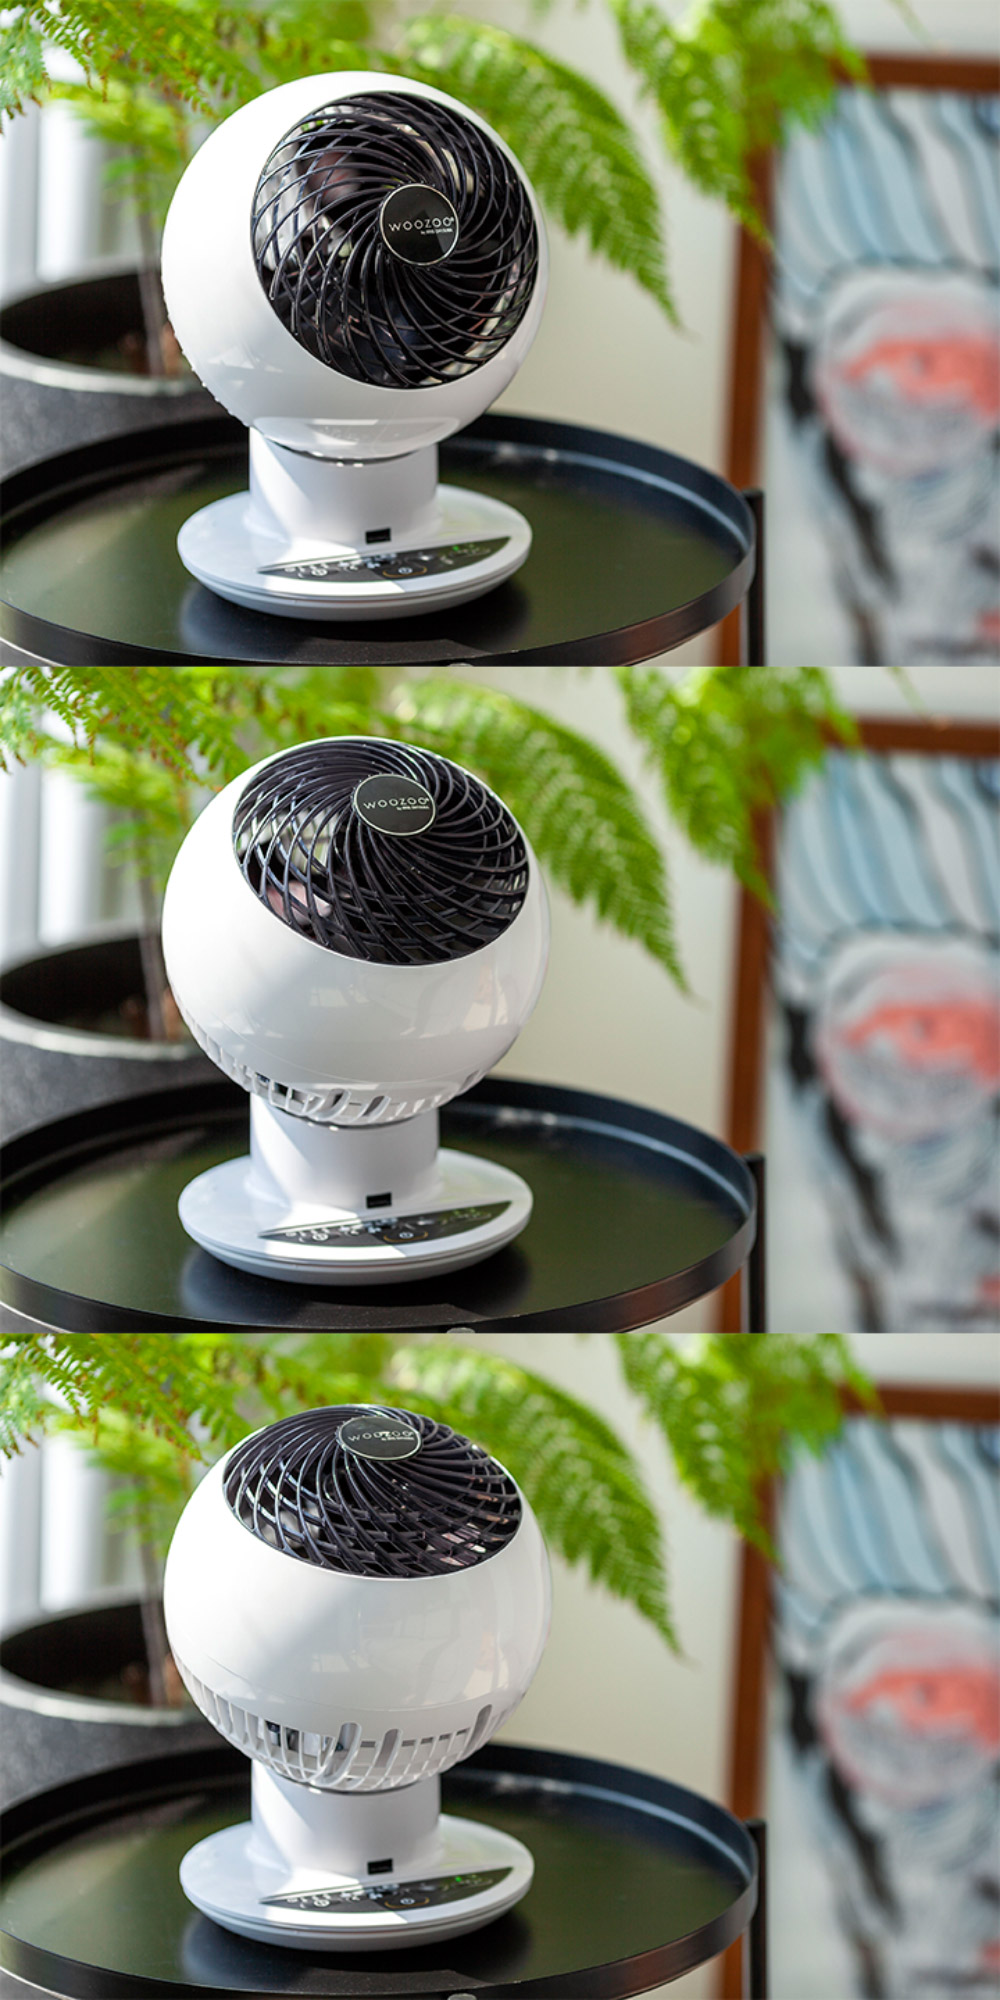 WOOZOO พัดลมตั้งโต๊ะ พัดลมขนาดเล็ก พัดลมหมุนเวียนอากาศ เครื่องใช้ไฟฟ้าจากญี่ปุ่น 